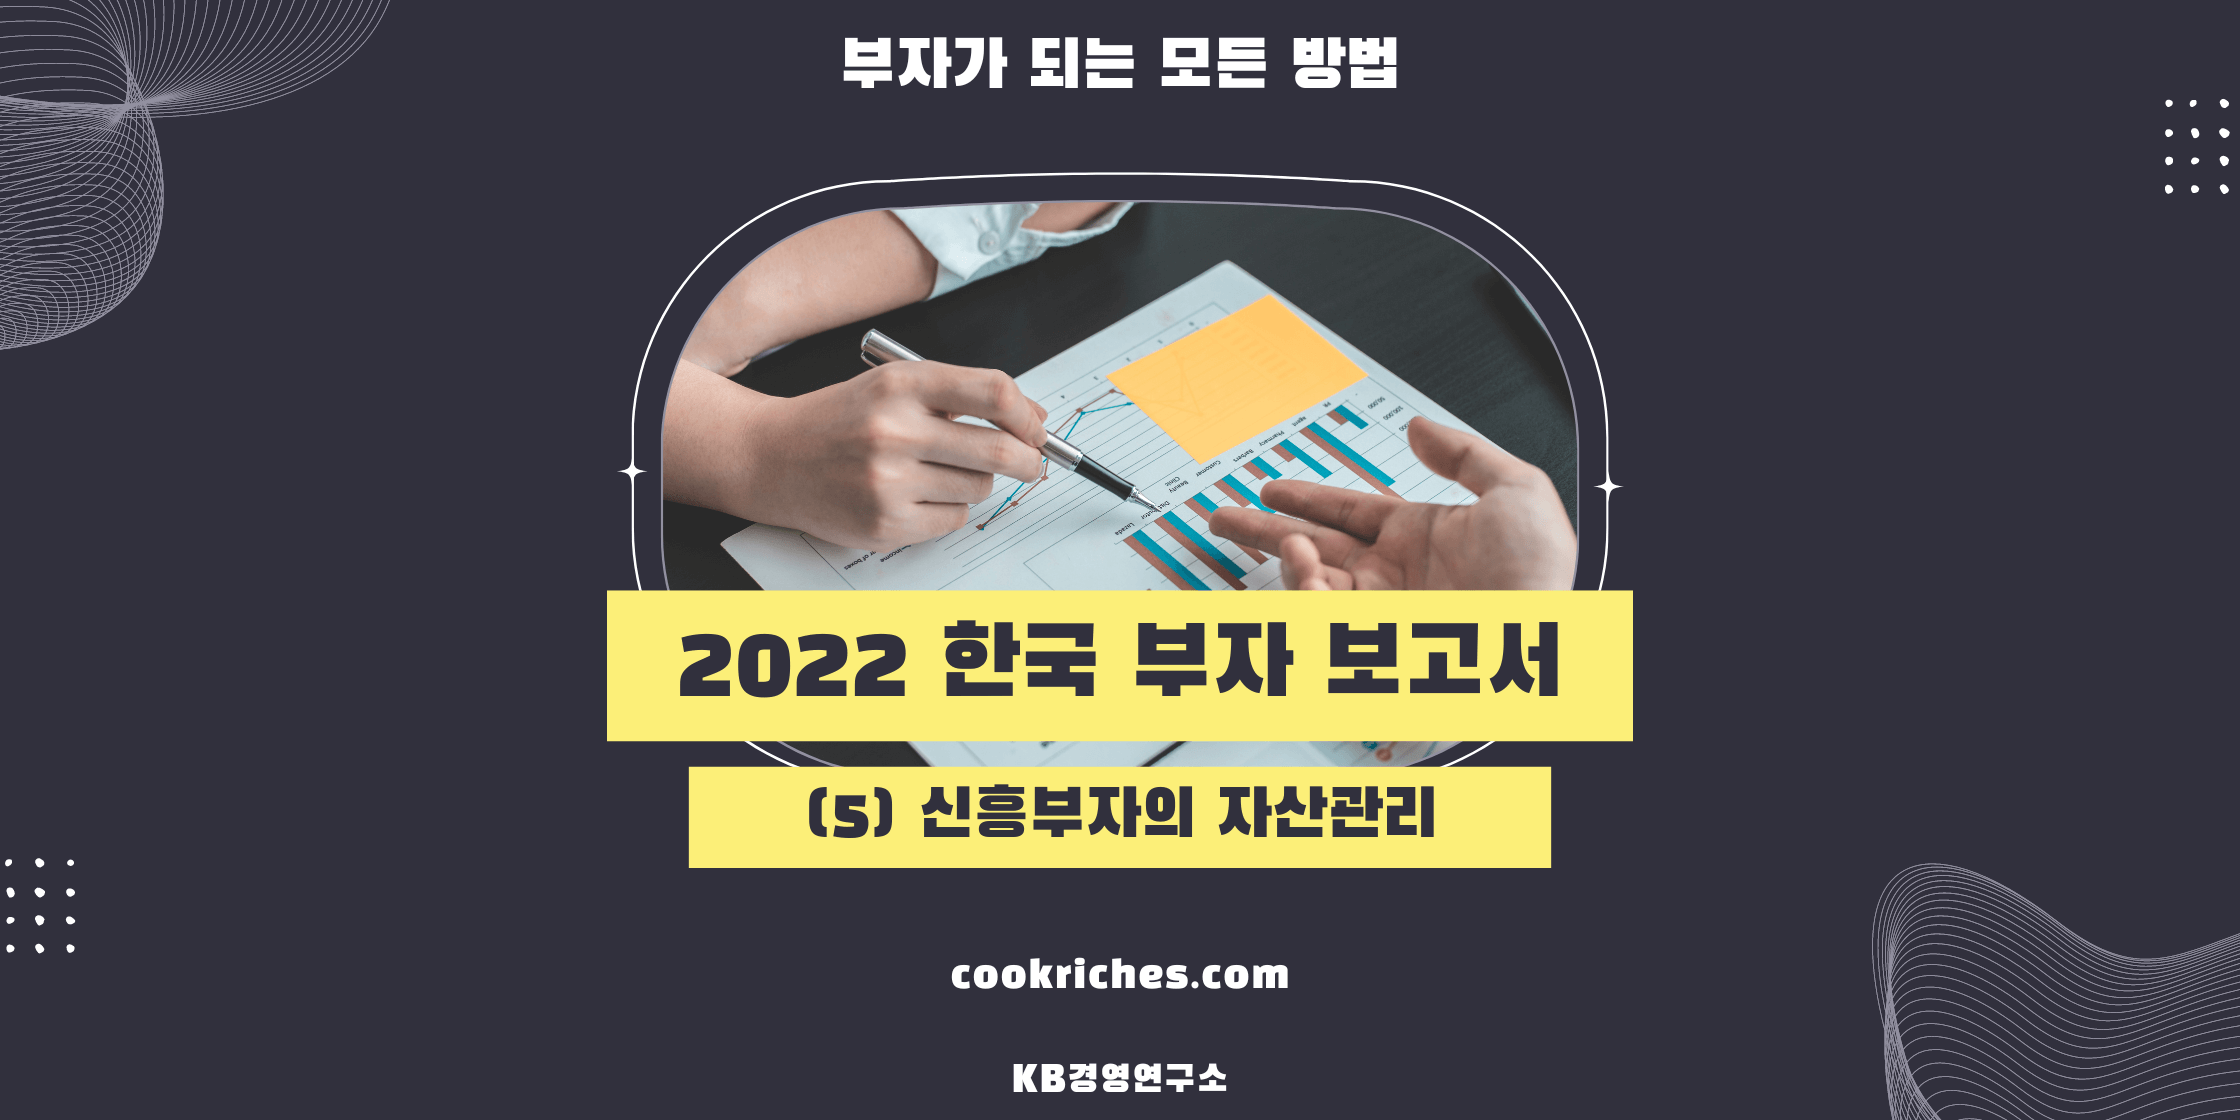 2022 한국 부자보고서 신흥부자의 자산관리에 대한 썸네일입니다.